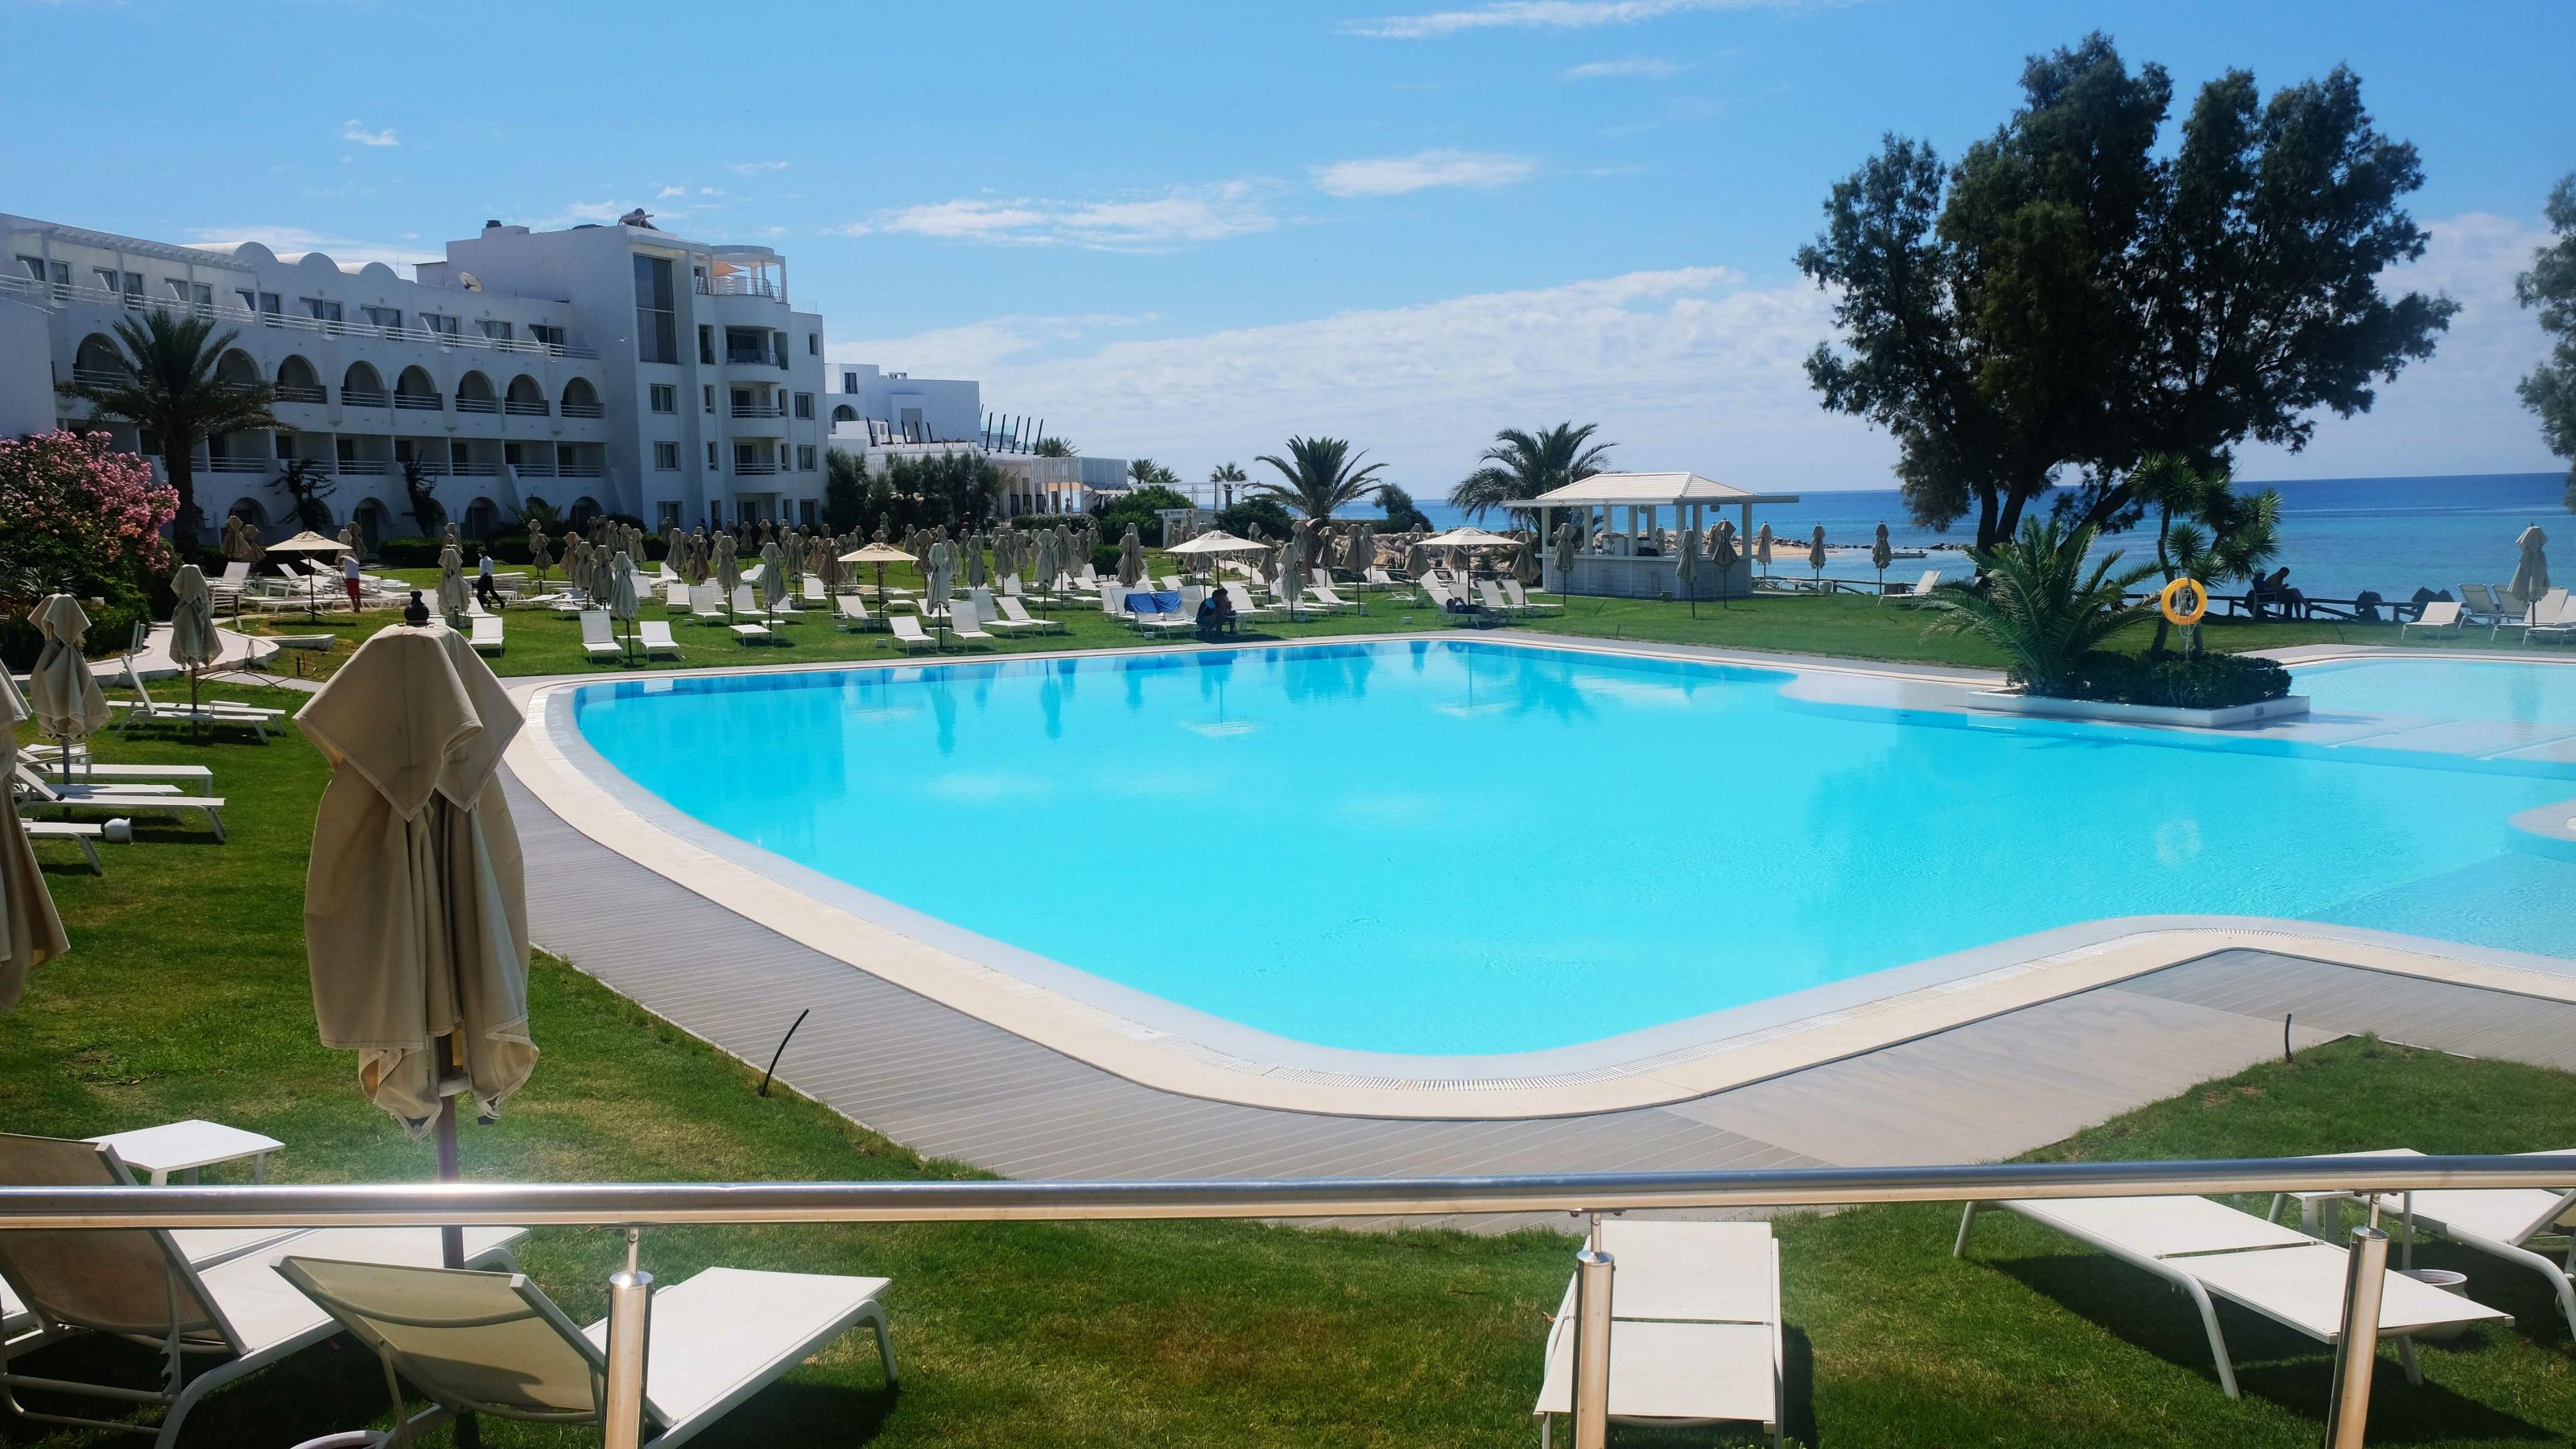 Blick auf Pool und leere Liegestühle auf einer Wiese im Hotel Sultan in Hammamet, Tunesien.